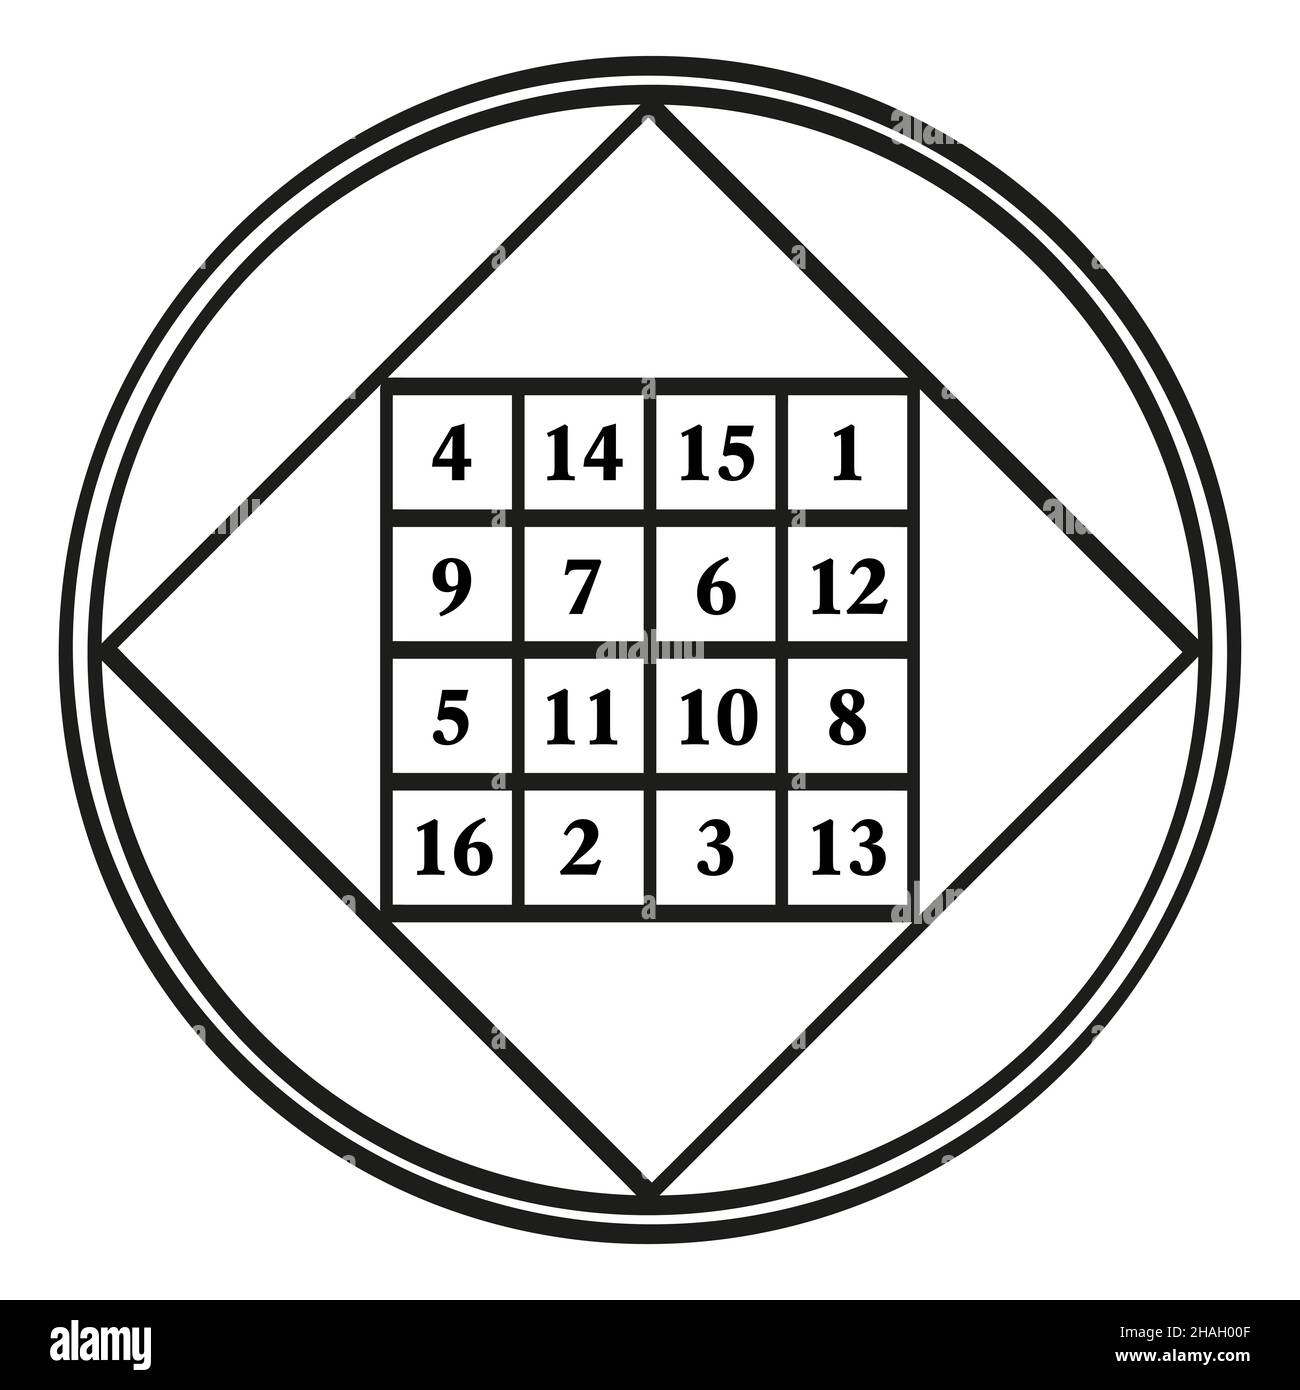 Ordine quattro quadrato magico, un simbolo, assegnato al pianeta astrologico Giove, con la costante magica 34. Quadrato magico con i numeri da 1 a 16. Foto Stock